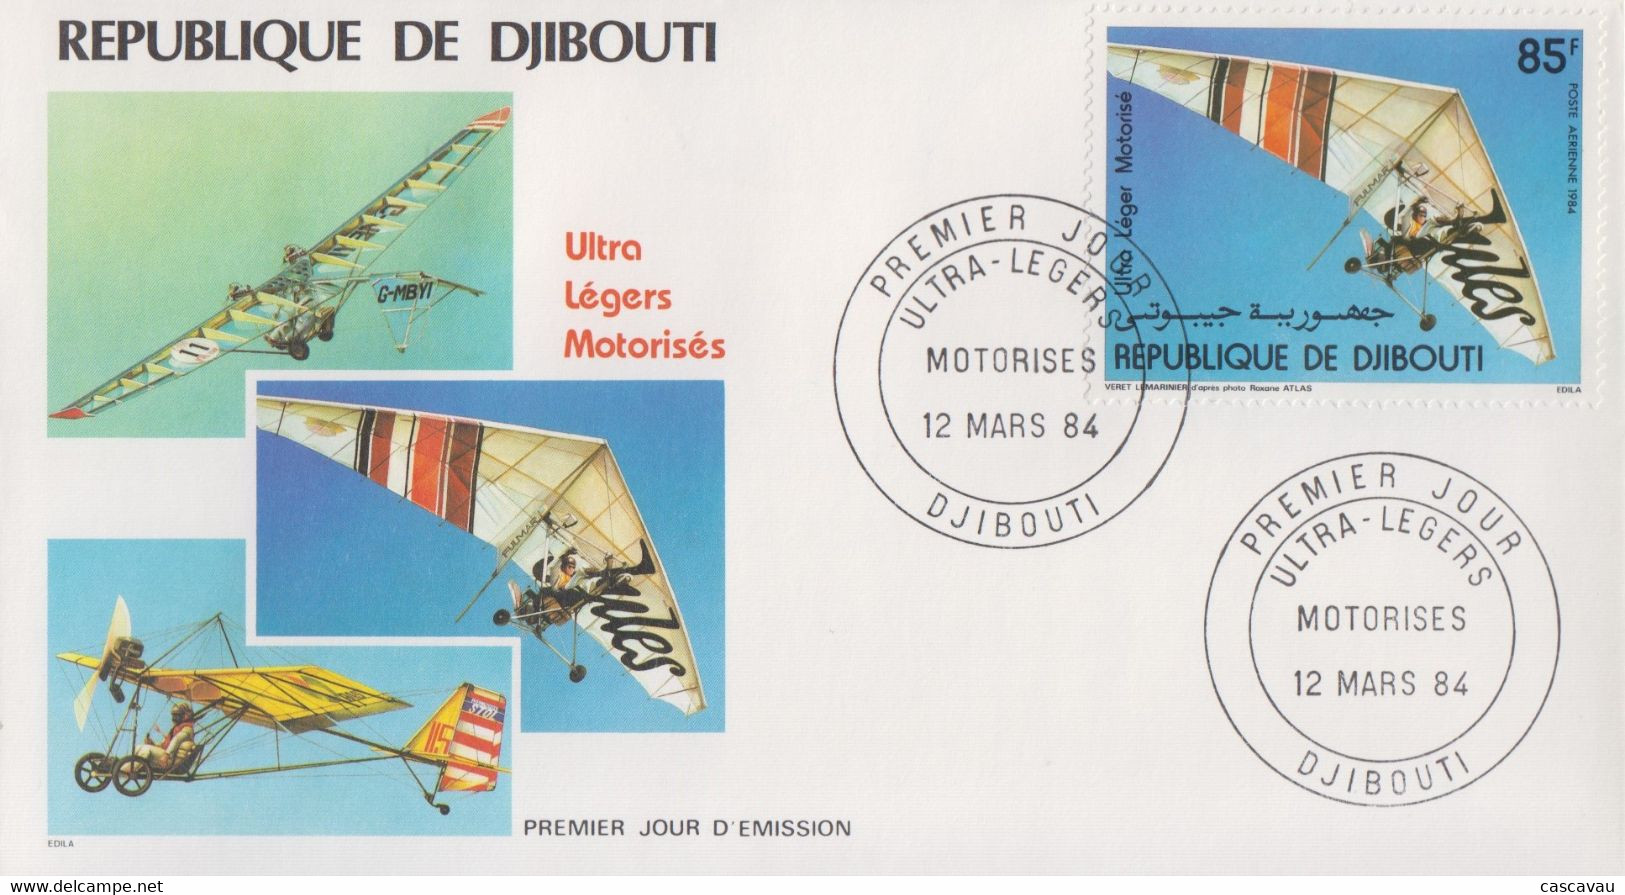 Enveloppe  FDC  1er  Jour    REPUBLIQUE   De   DJIBOUTI    Ultra - Légers   Motorisés    1984 - Sonstige (Luft)